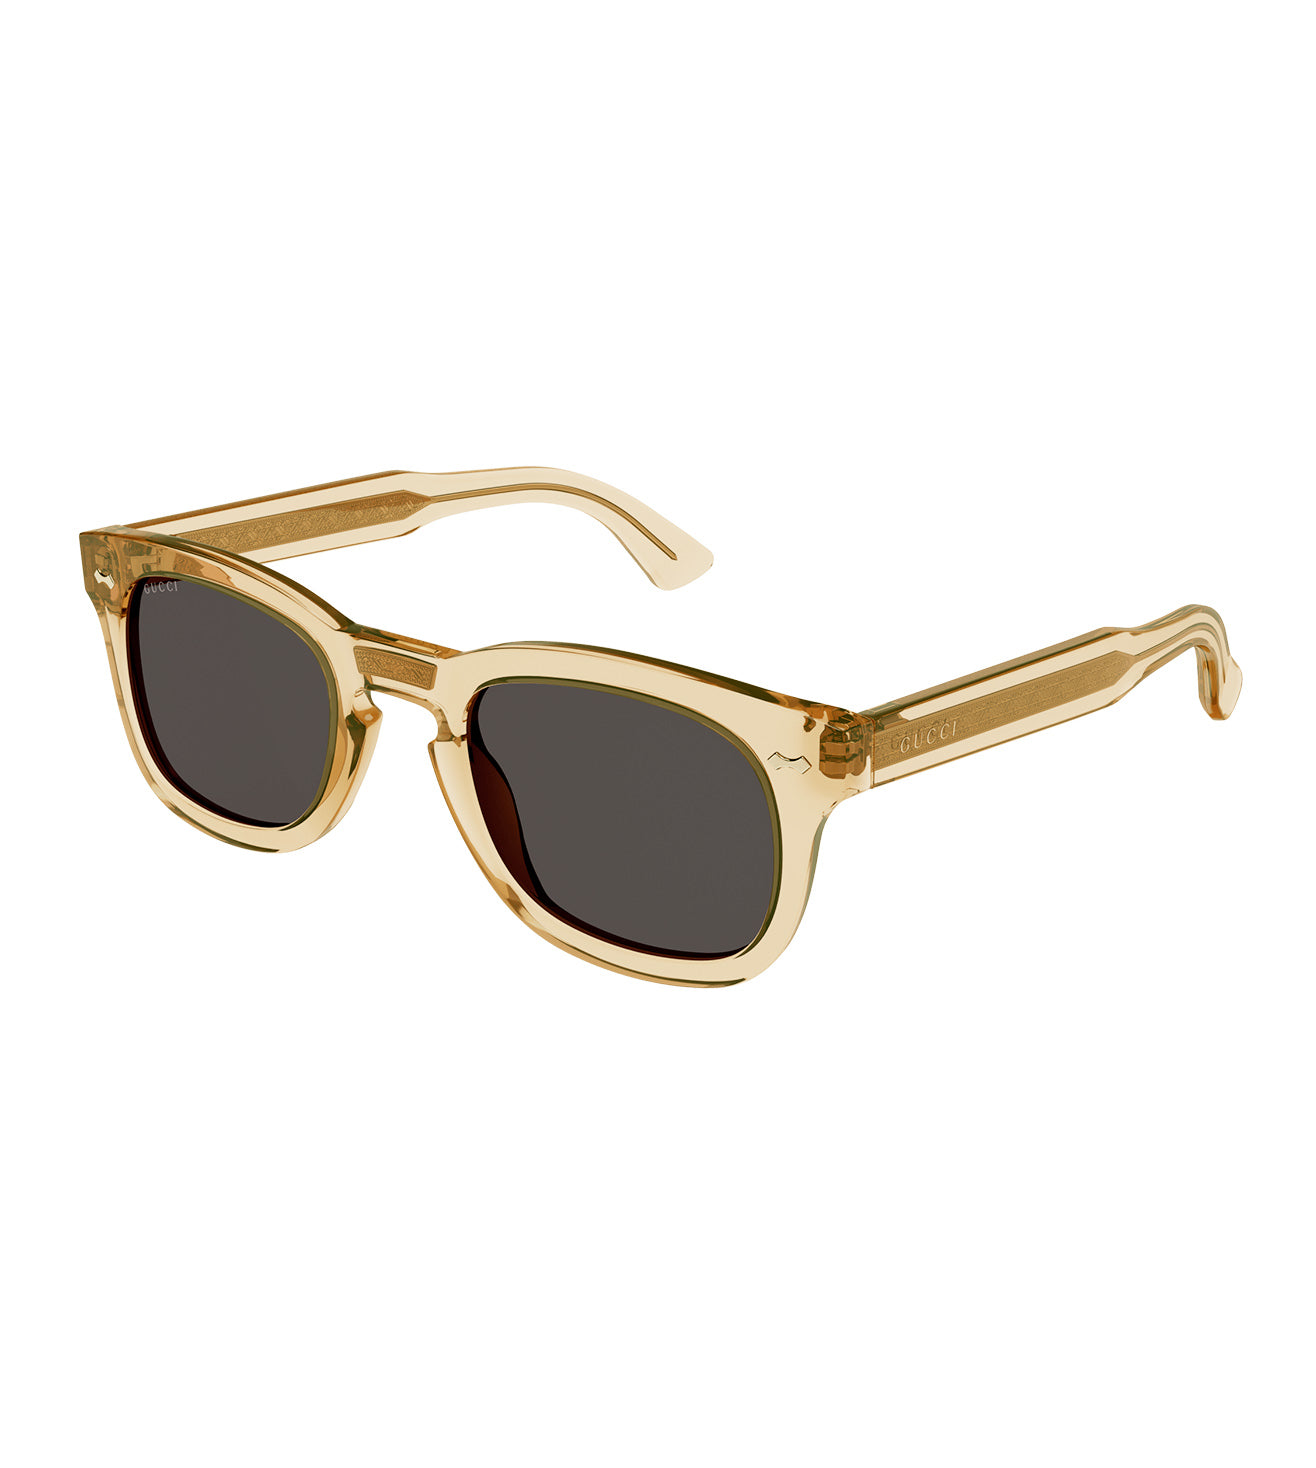 Gucci Unisex Grey Square Sunglasses